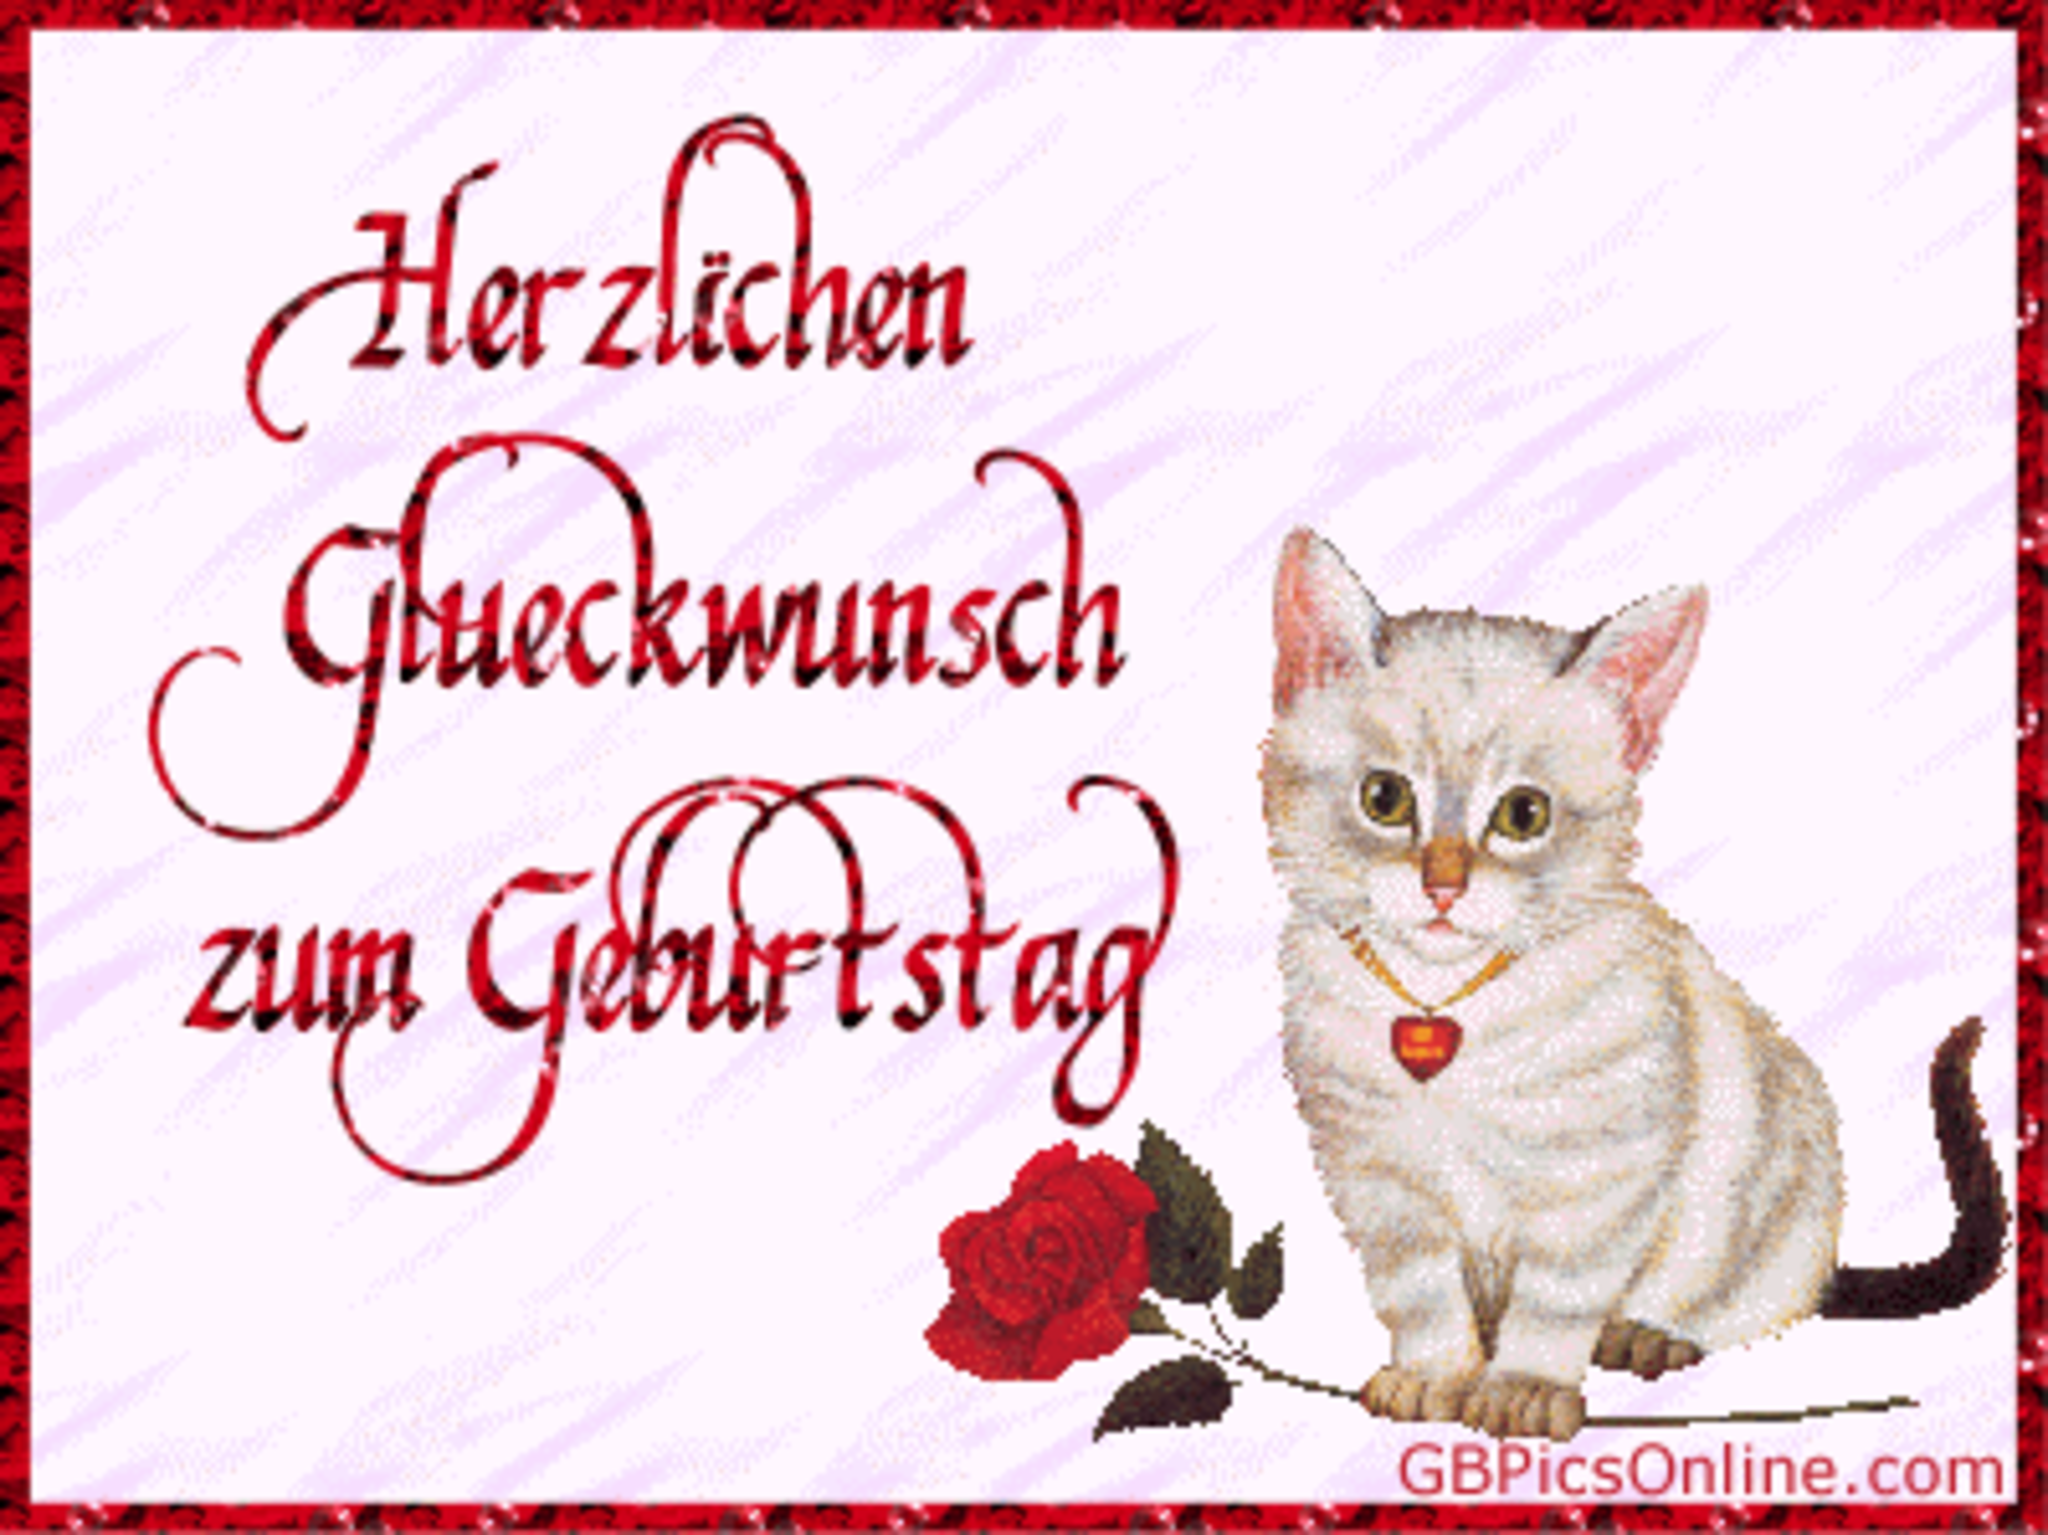 Пожелания на немецком языке. Поздравления с днём рождения мужчине на немецком языке. Поздравительная открытка с днём рождения на немецком языке. Немецкие открытки с днем рождения. Поздравление с др на немецком.